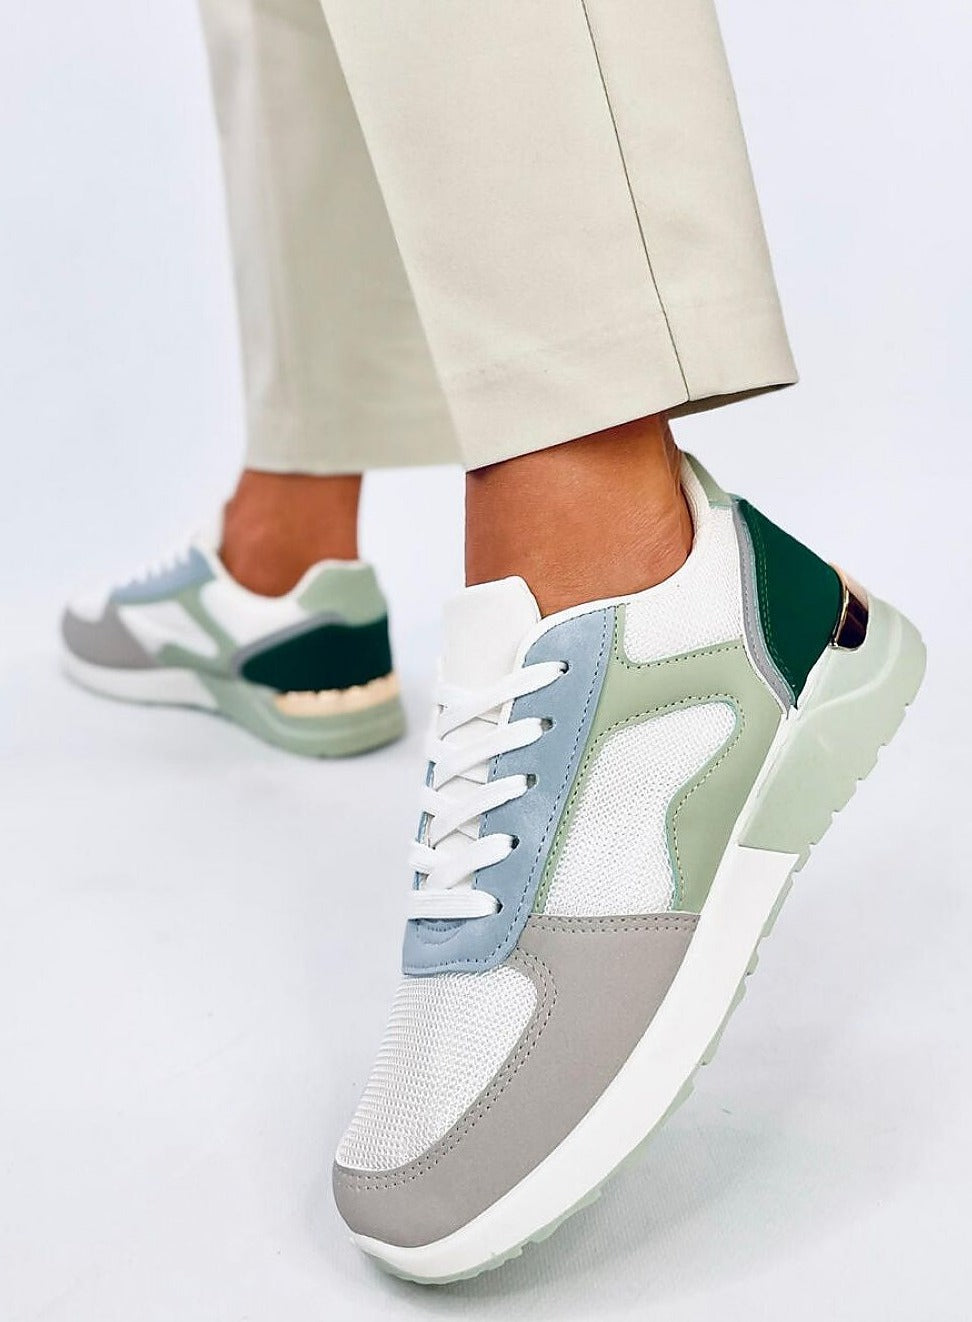 TEEK - Green Blue Pedaled Sneakers SHOES TEEK MH   